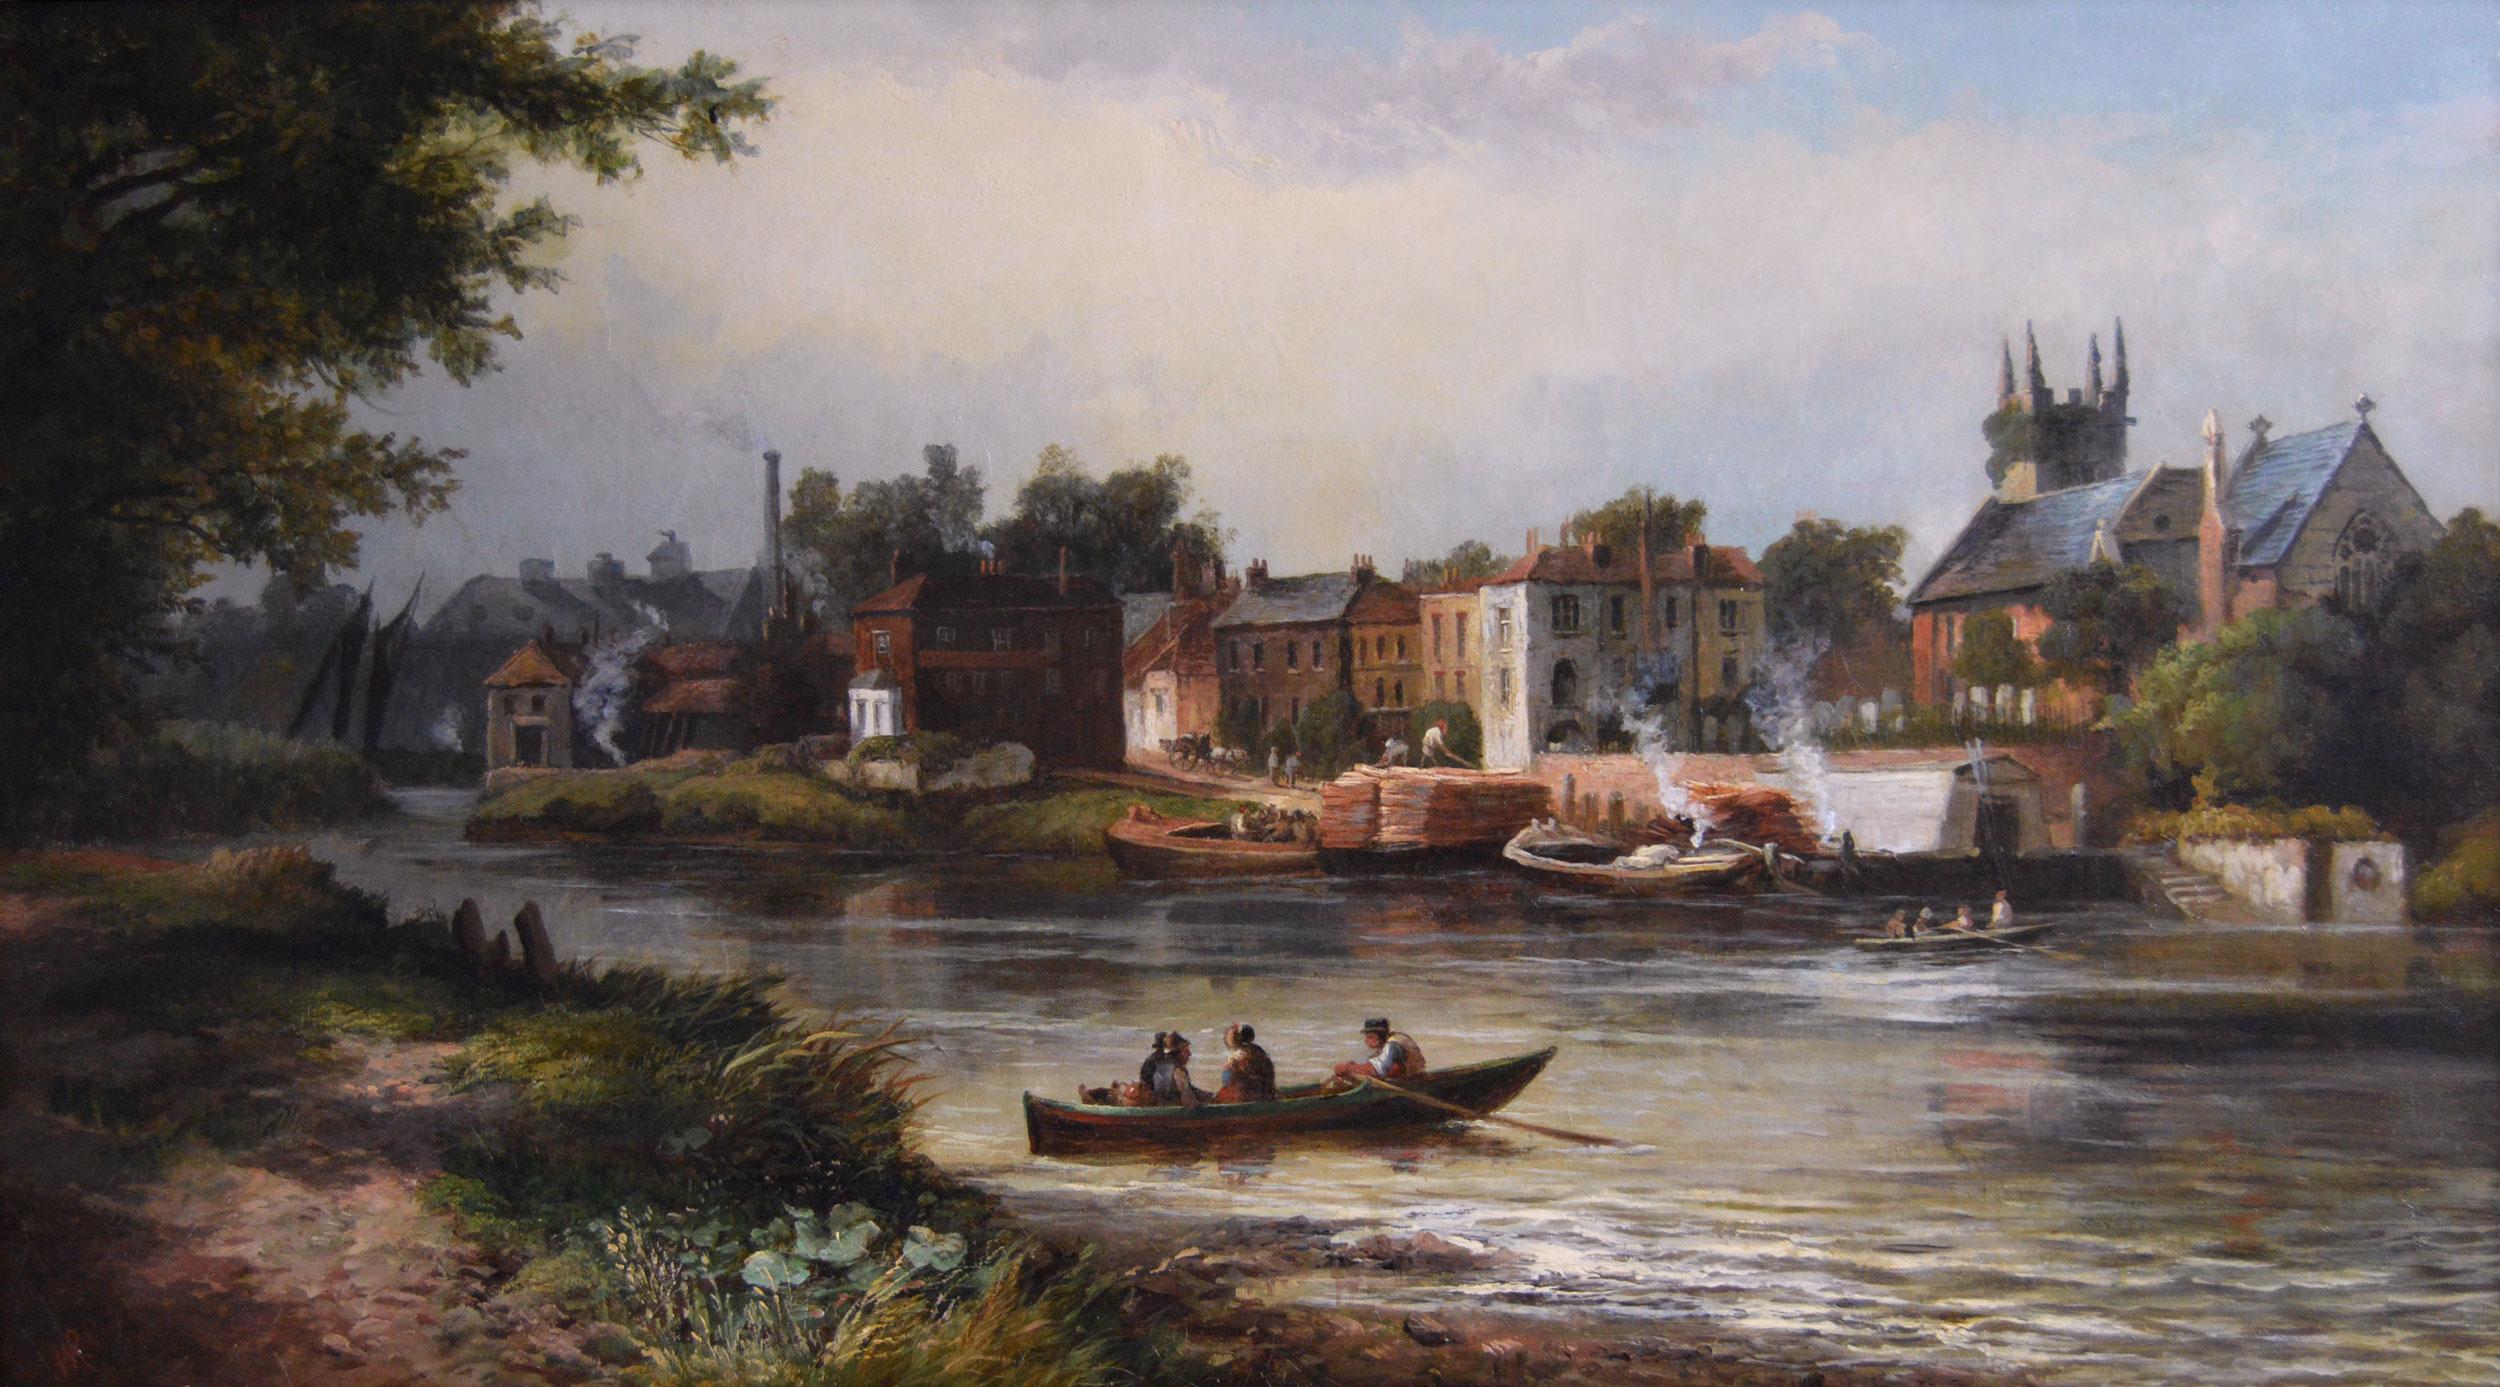 Landschaftsgemälde der Themse, Ölgemälde des 19. Jahrhunderts  – Painting von William R Stone